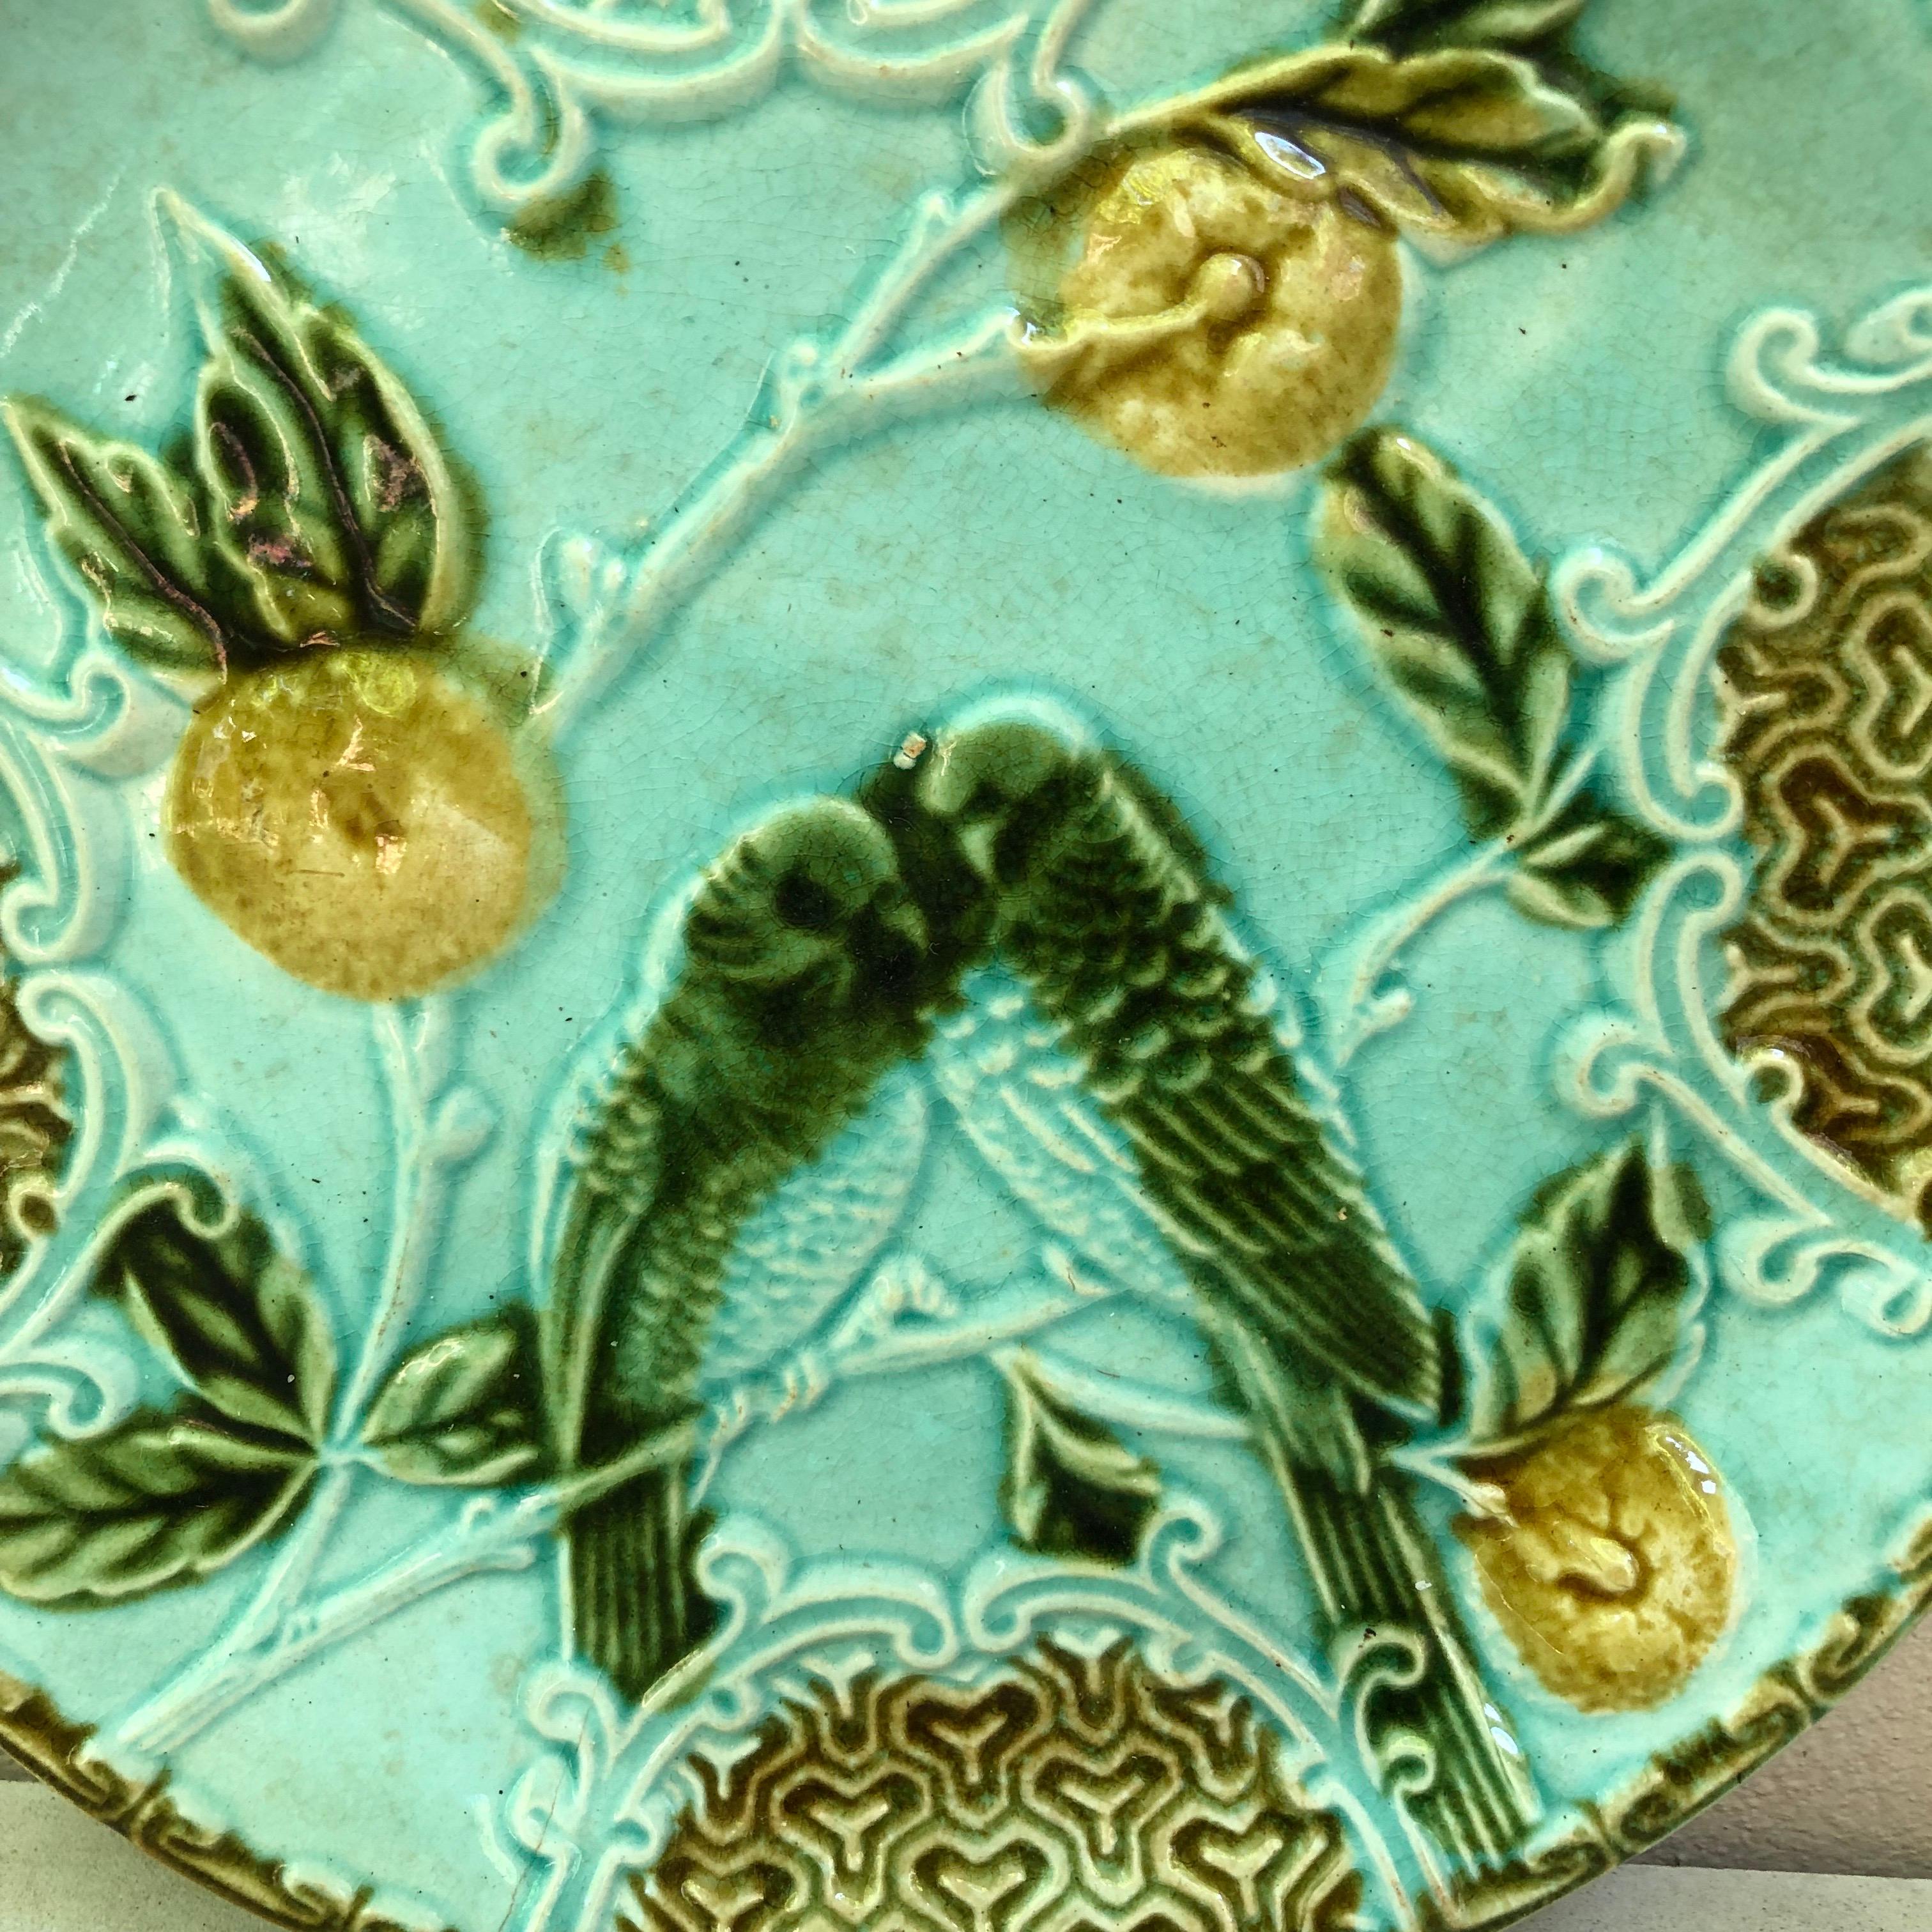 Majolika Teller zwei Sittiche auf blauem Grund mit Orangen signiert Salins, um 1890.
 